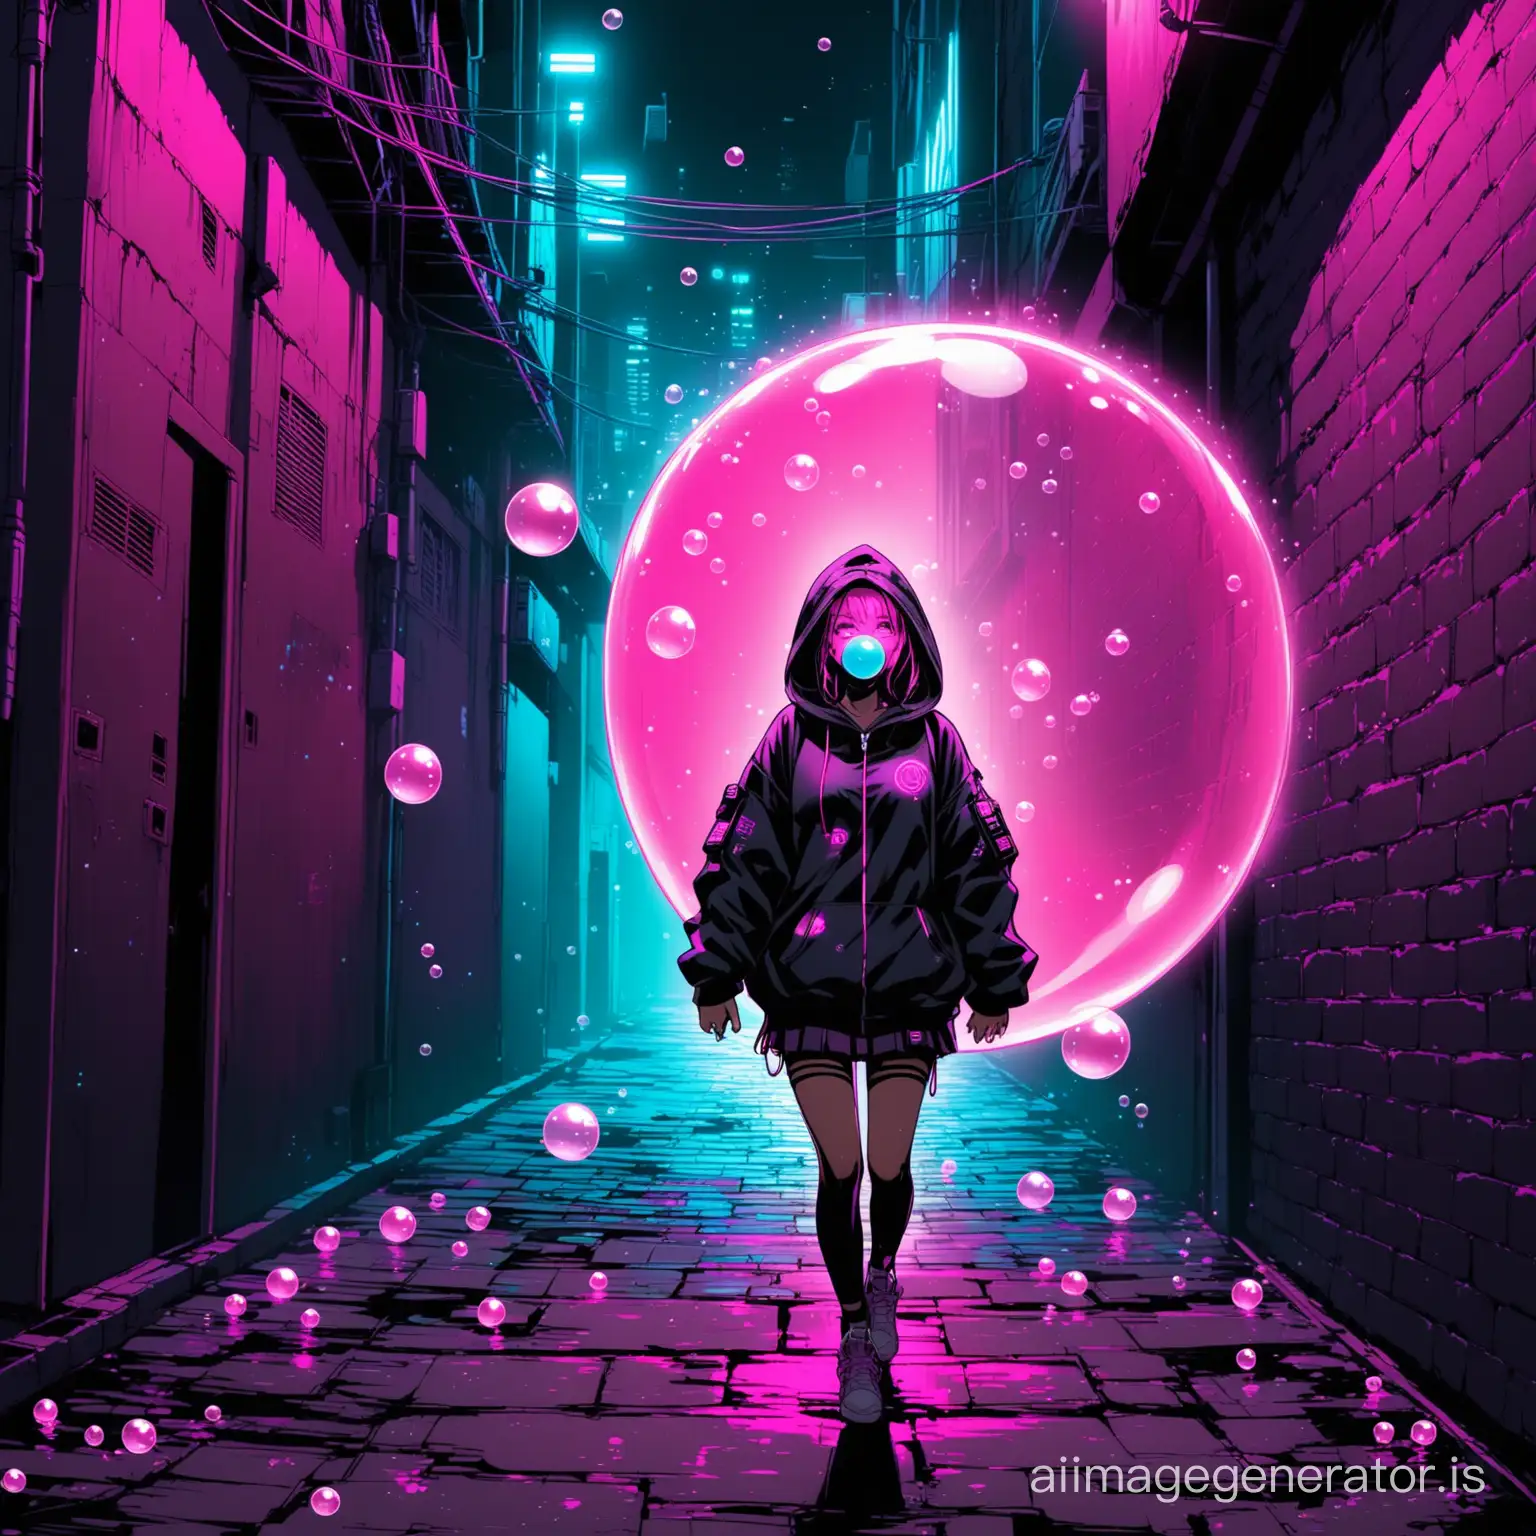 Neon-Cyberpunk-Girl-Blowing-Bubble-Gum-in-Dark-Alley